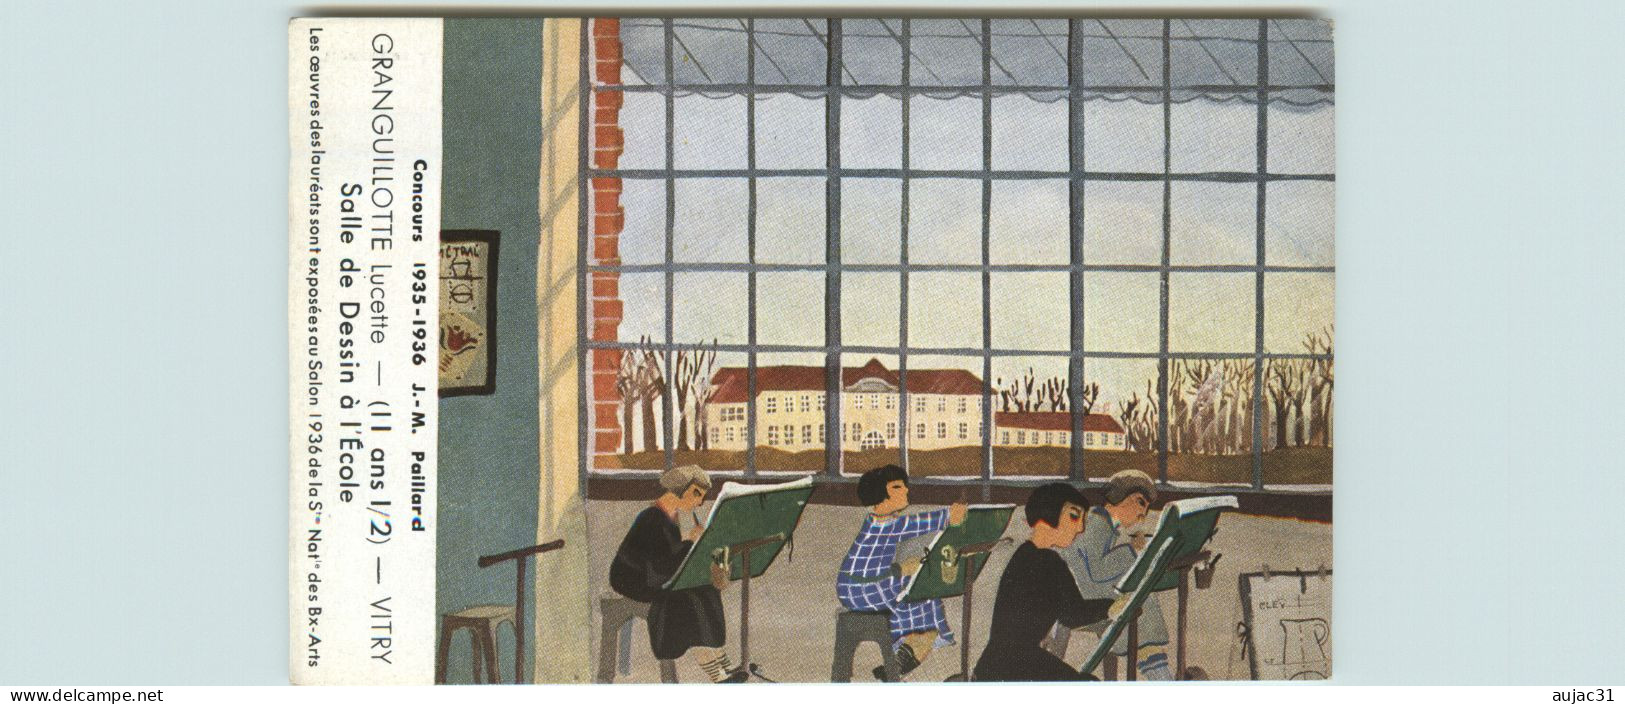 Dép 94 - Vitry Sur Seine - Concours 1935-1936 - J.M. Paillard - Granguillotte Lucette - Salle De Dessin à L'école - état - Vitry Sur Seine